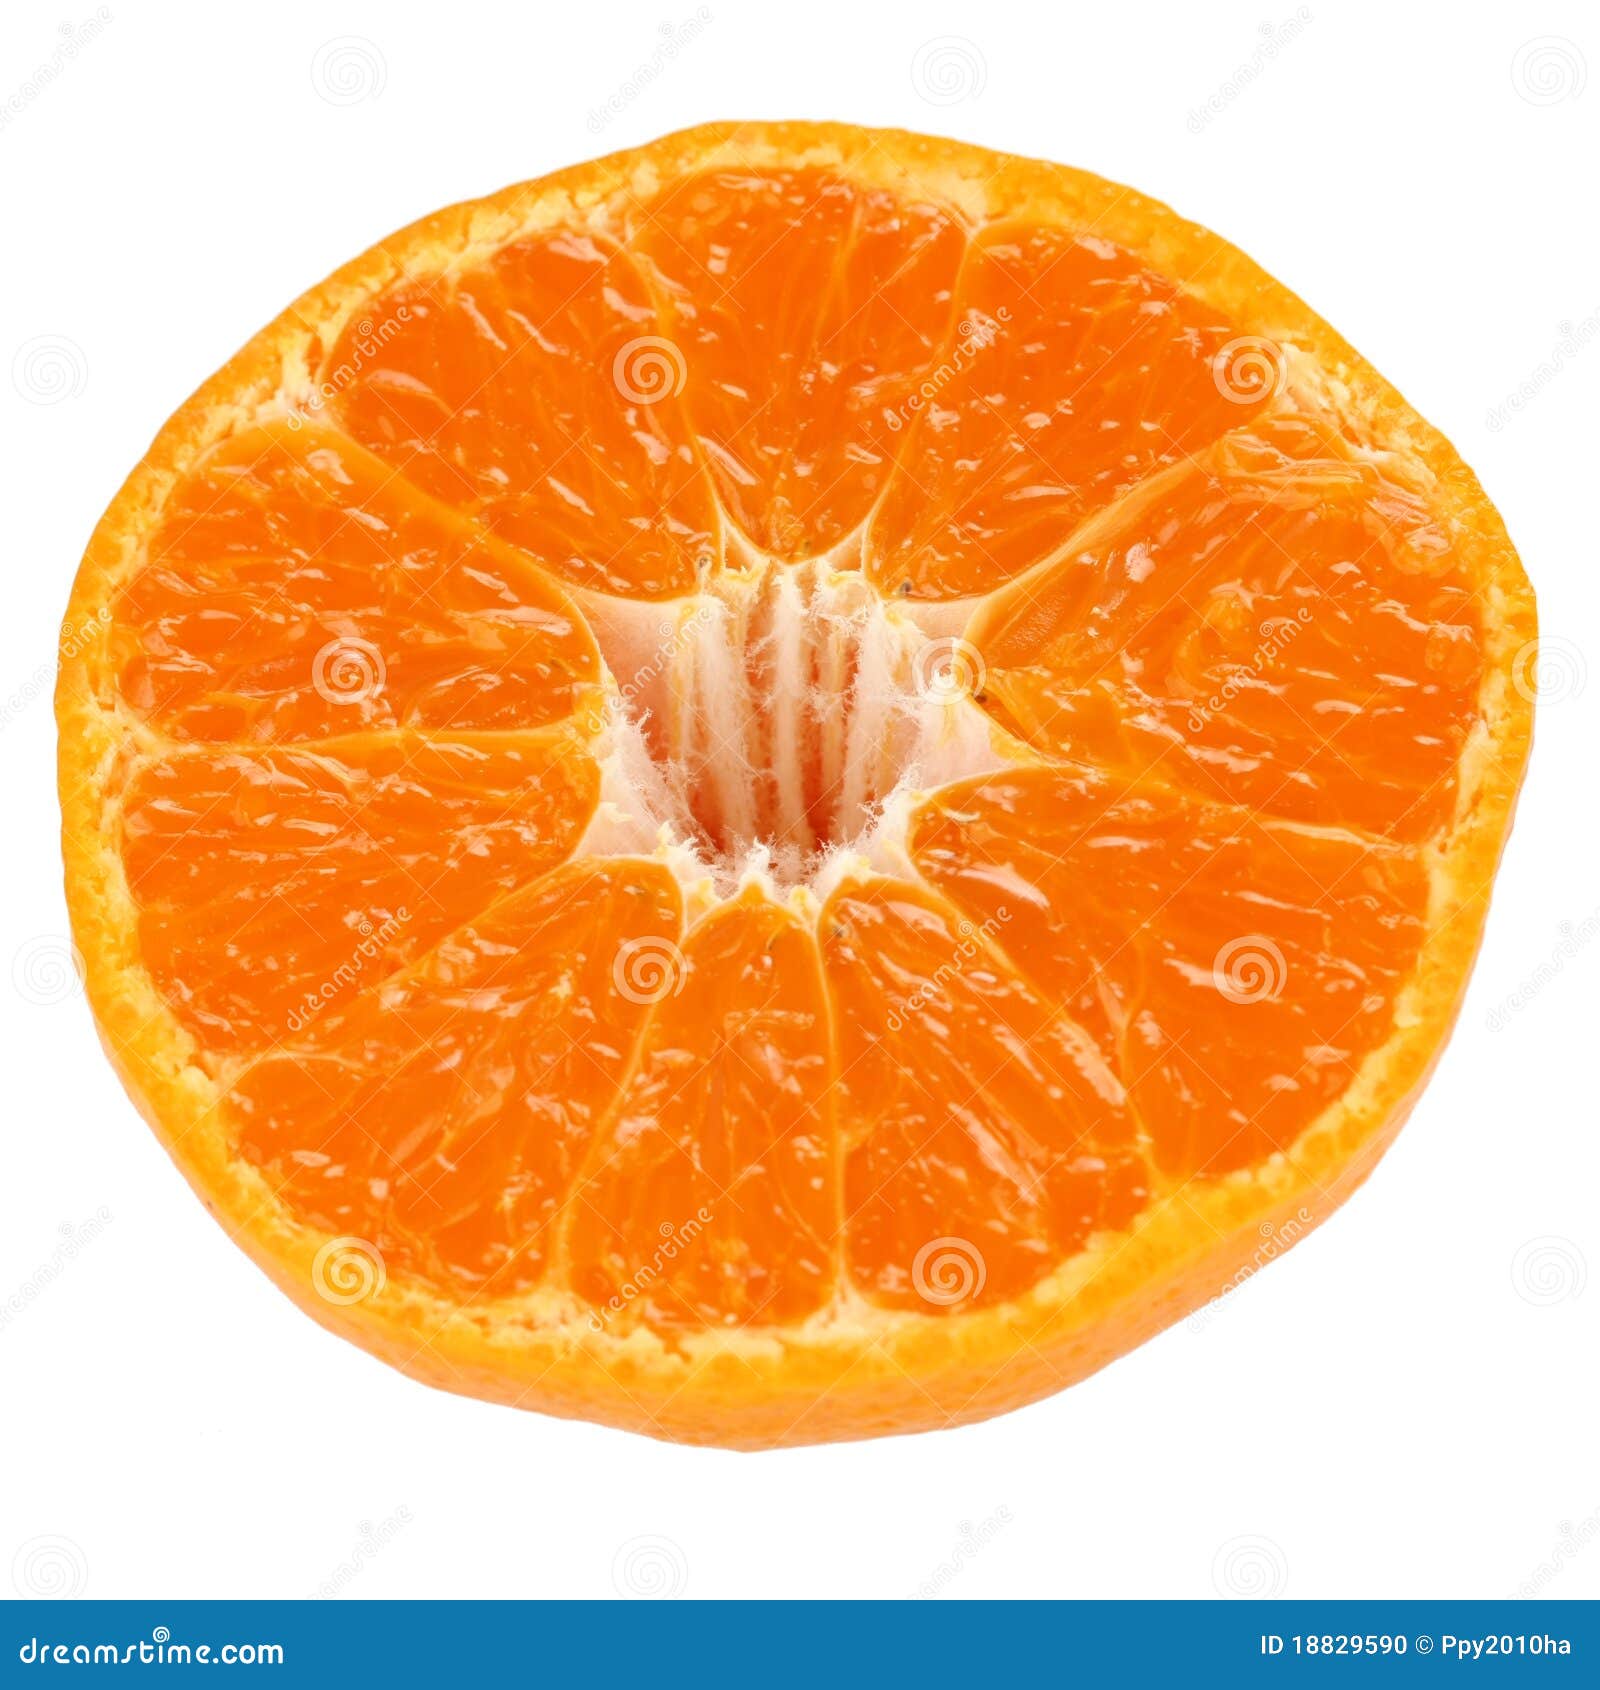 Mamami Orange , Japanese High Quality Citrus Fruit Stock Photo - Image: 18829590